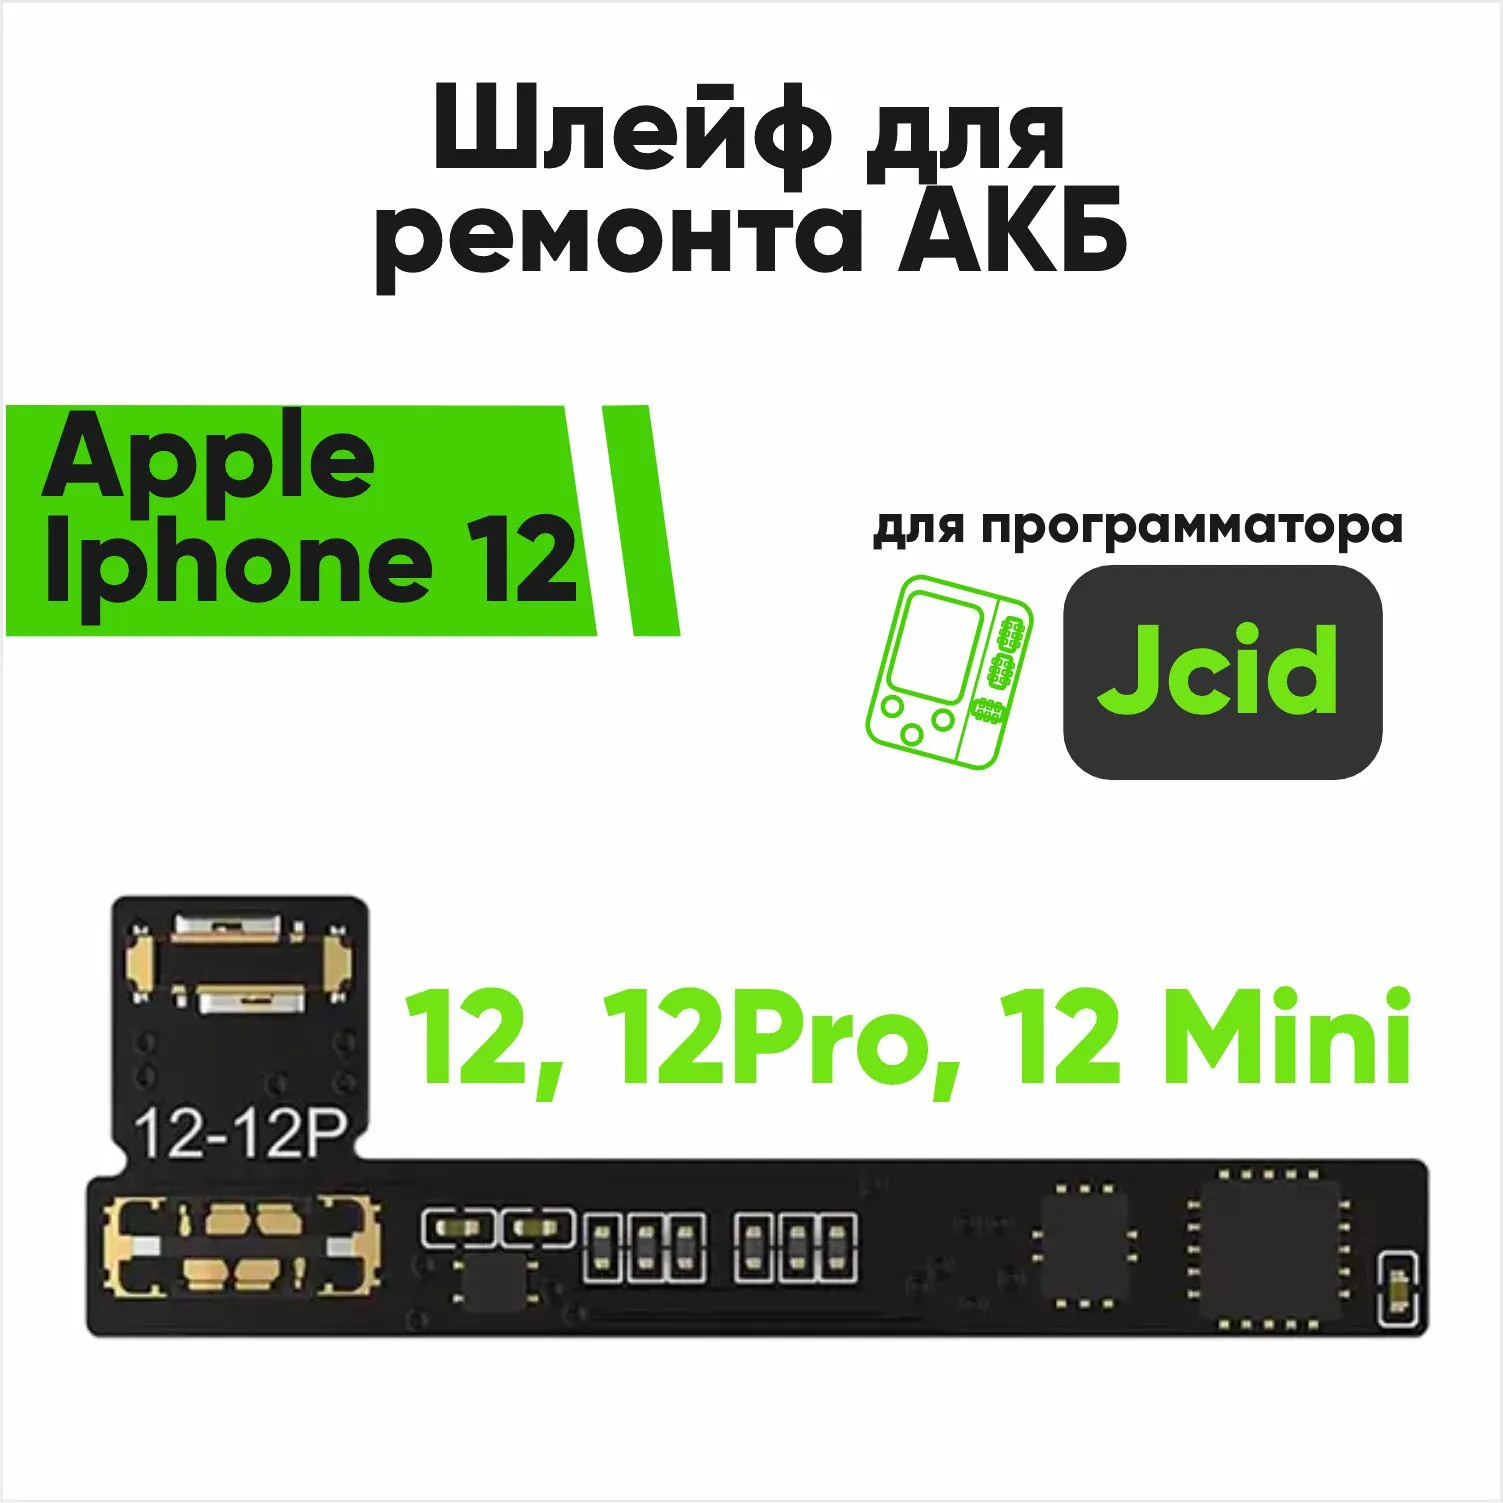 Шлейф для ремонта акб Jcid Apple Iphone 12, 12Pro, 12 Mini